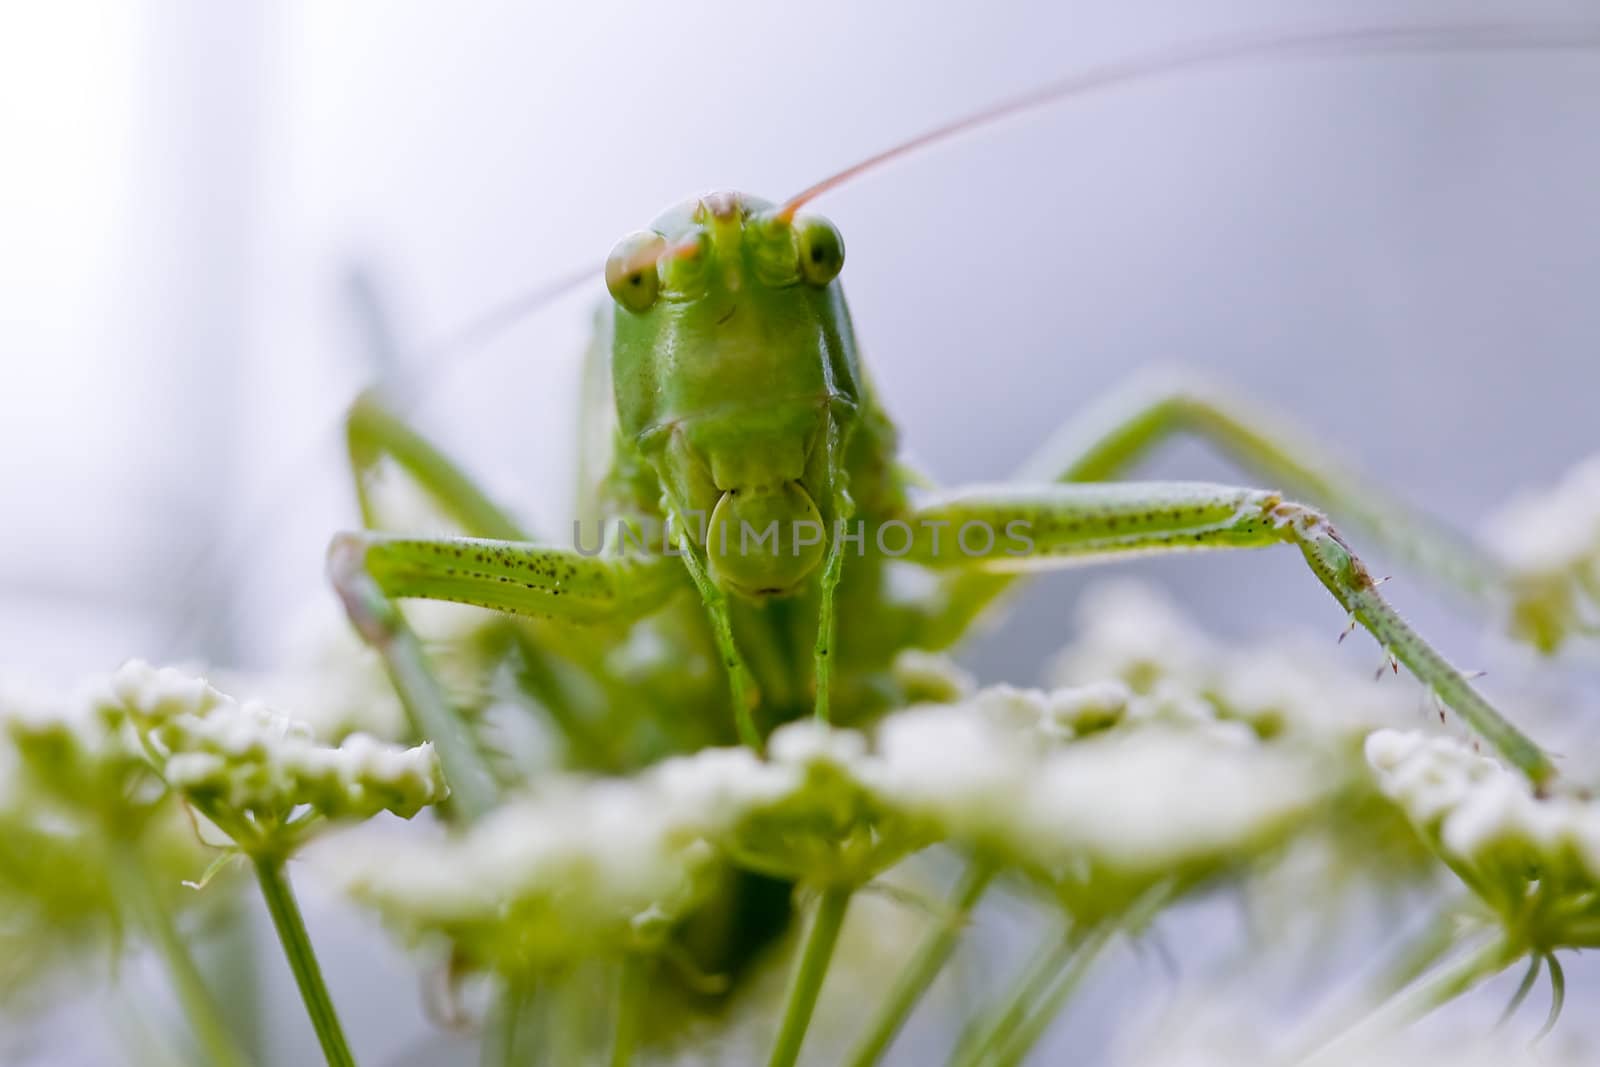 Grasshopper portrait by Lincikas